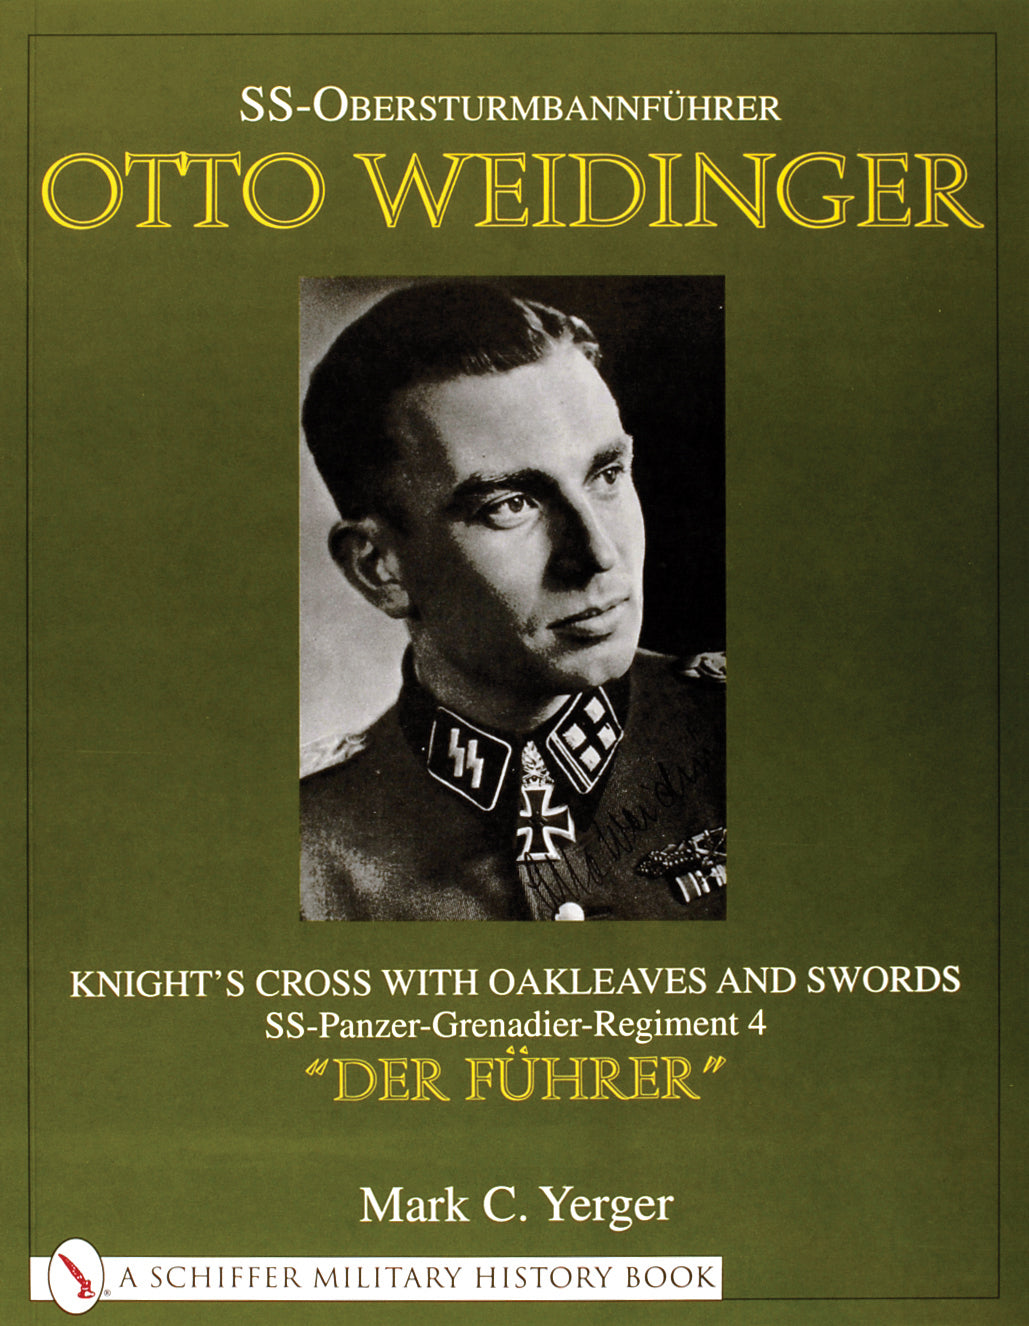 SS-Obersturmbannführer Otto Weidinger